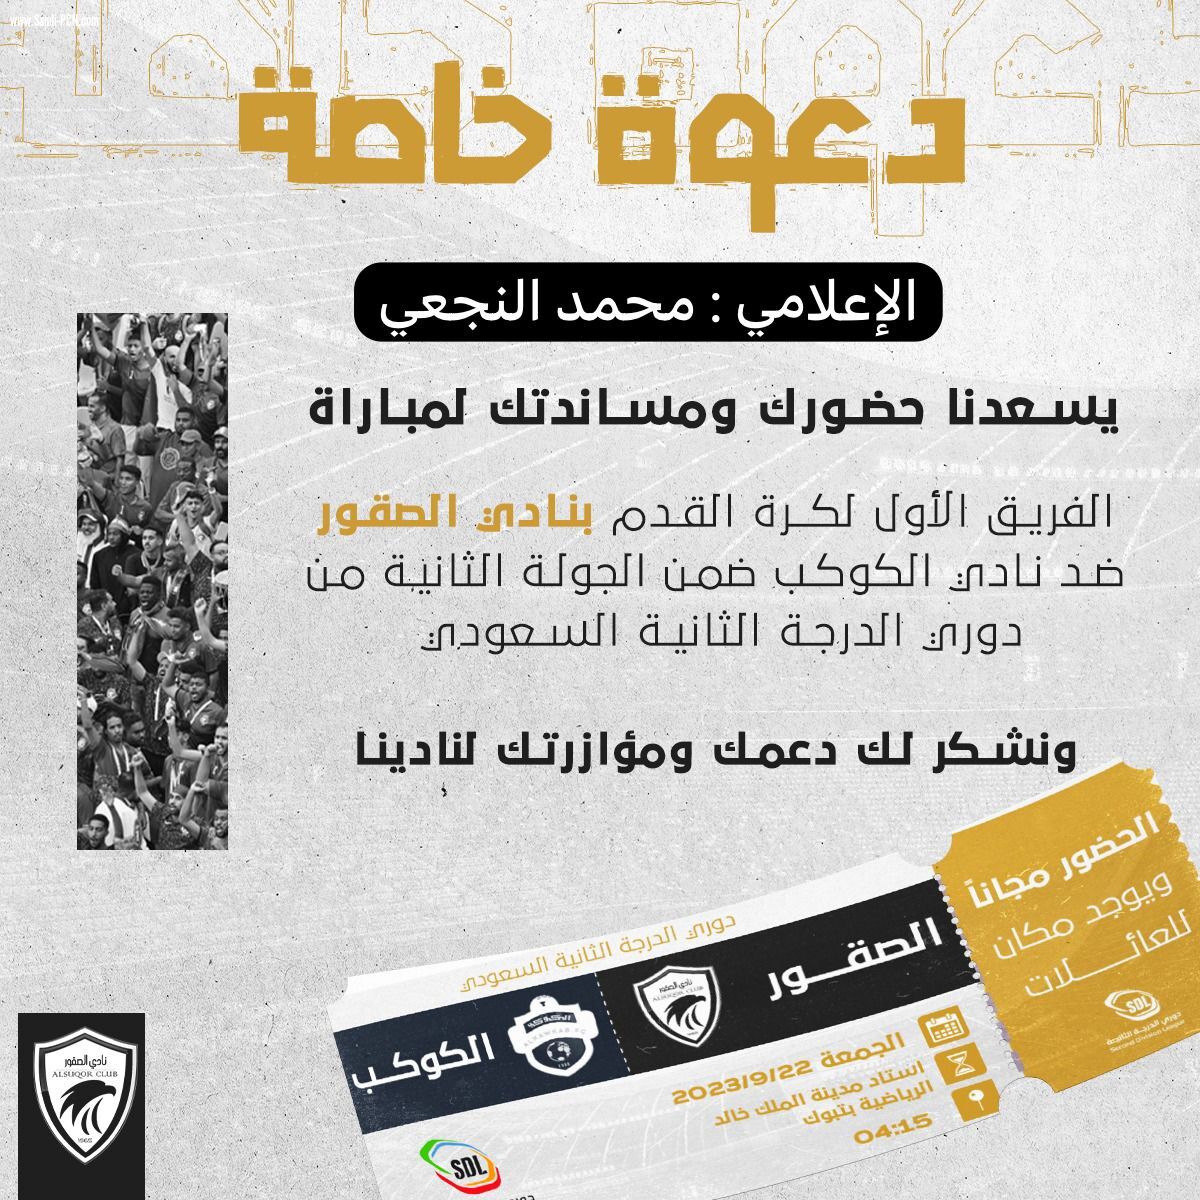 الإعلامي محمد النجعي يتلقى دعوة من نادي الصقور لحضور مباراته مع نادي الكوكب يوم غدٍ .